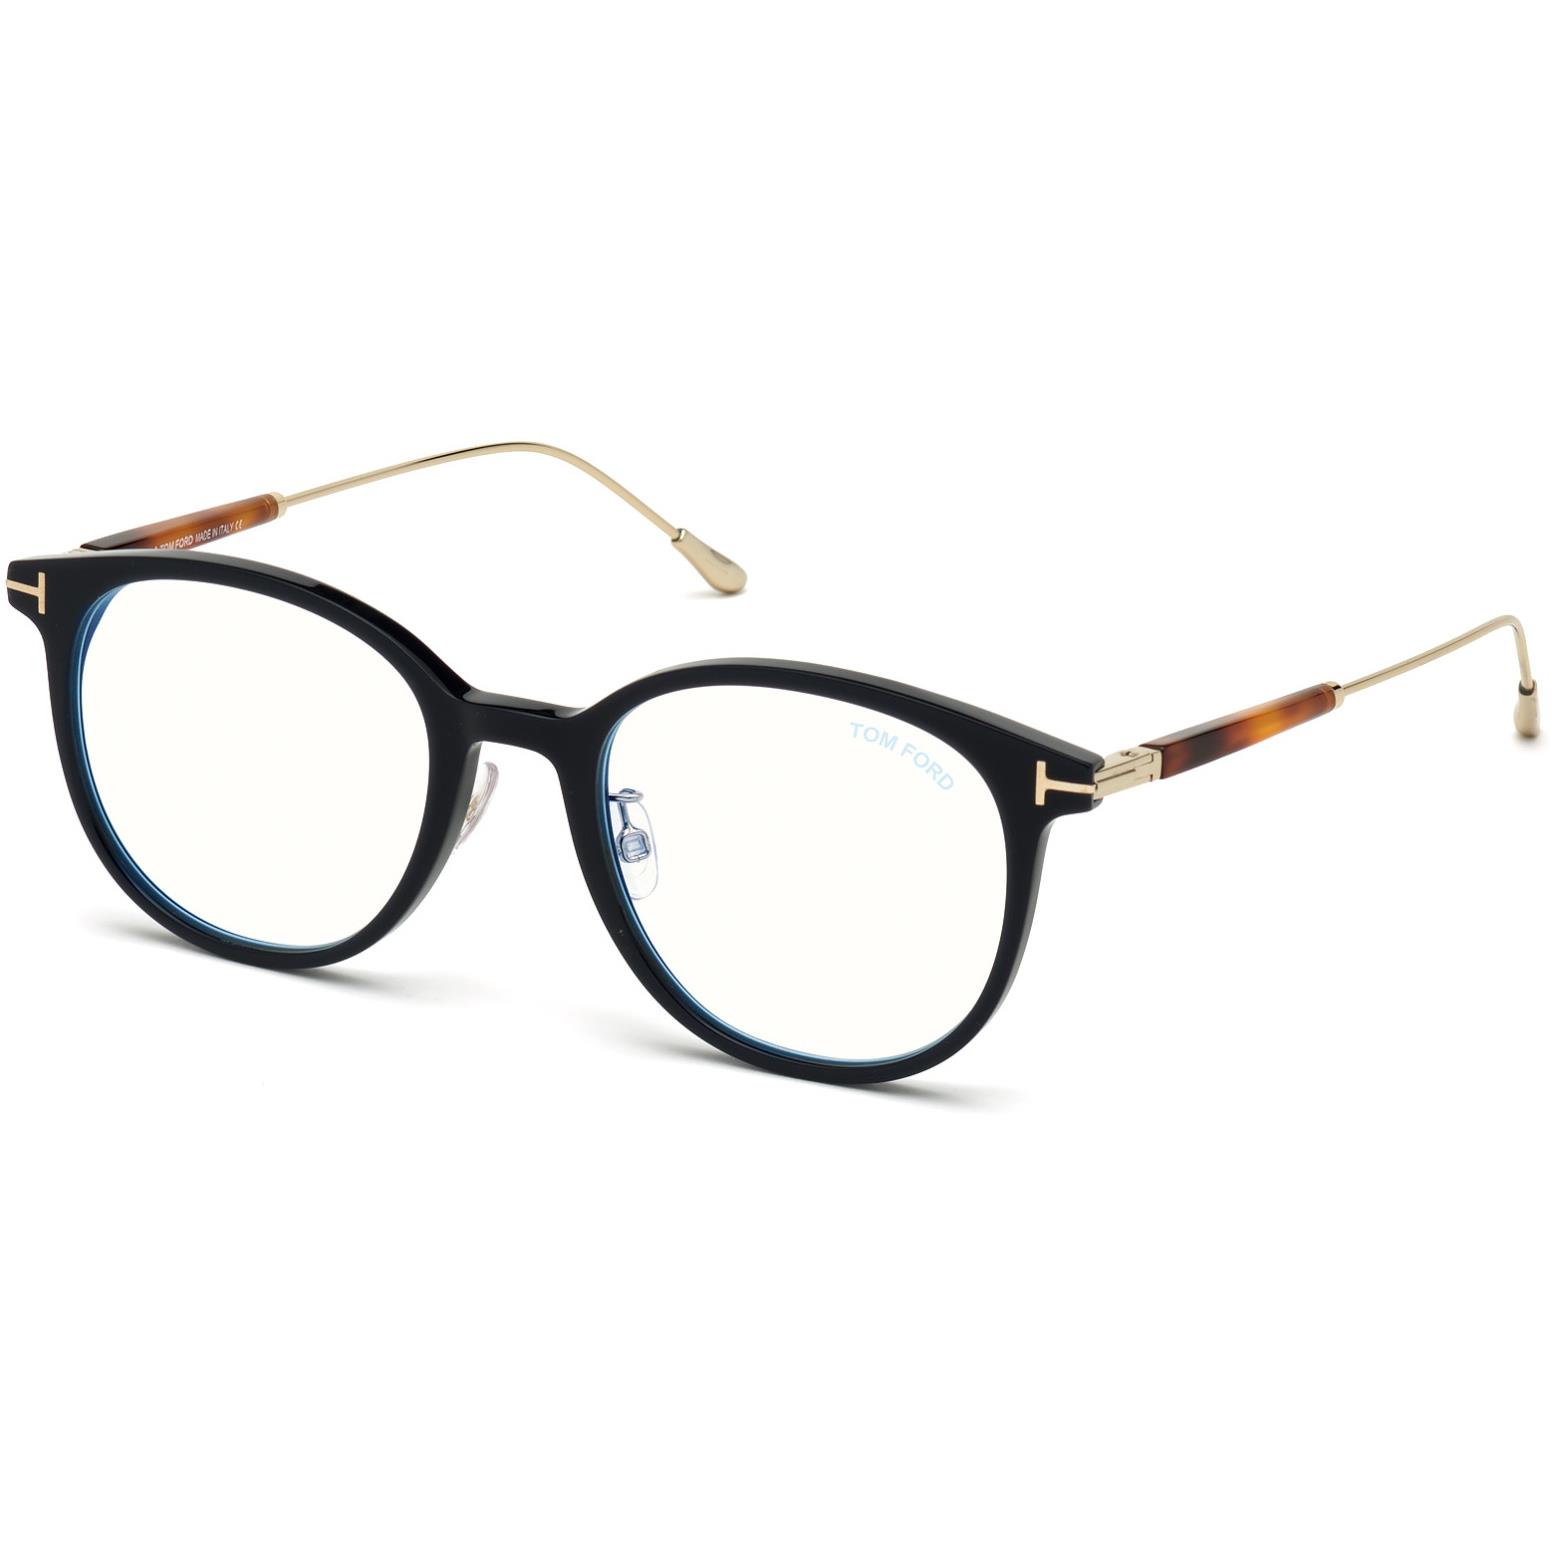 Men Tom Ford Ft5644 D B 090 52mm Eyeglasses 889214078377 Tom Ford Eyeglasses Multi Frame